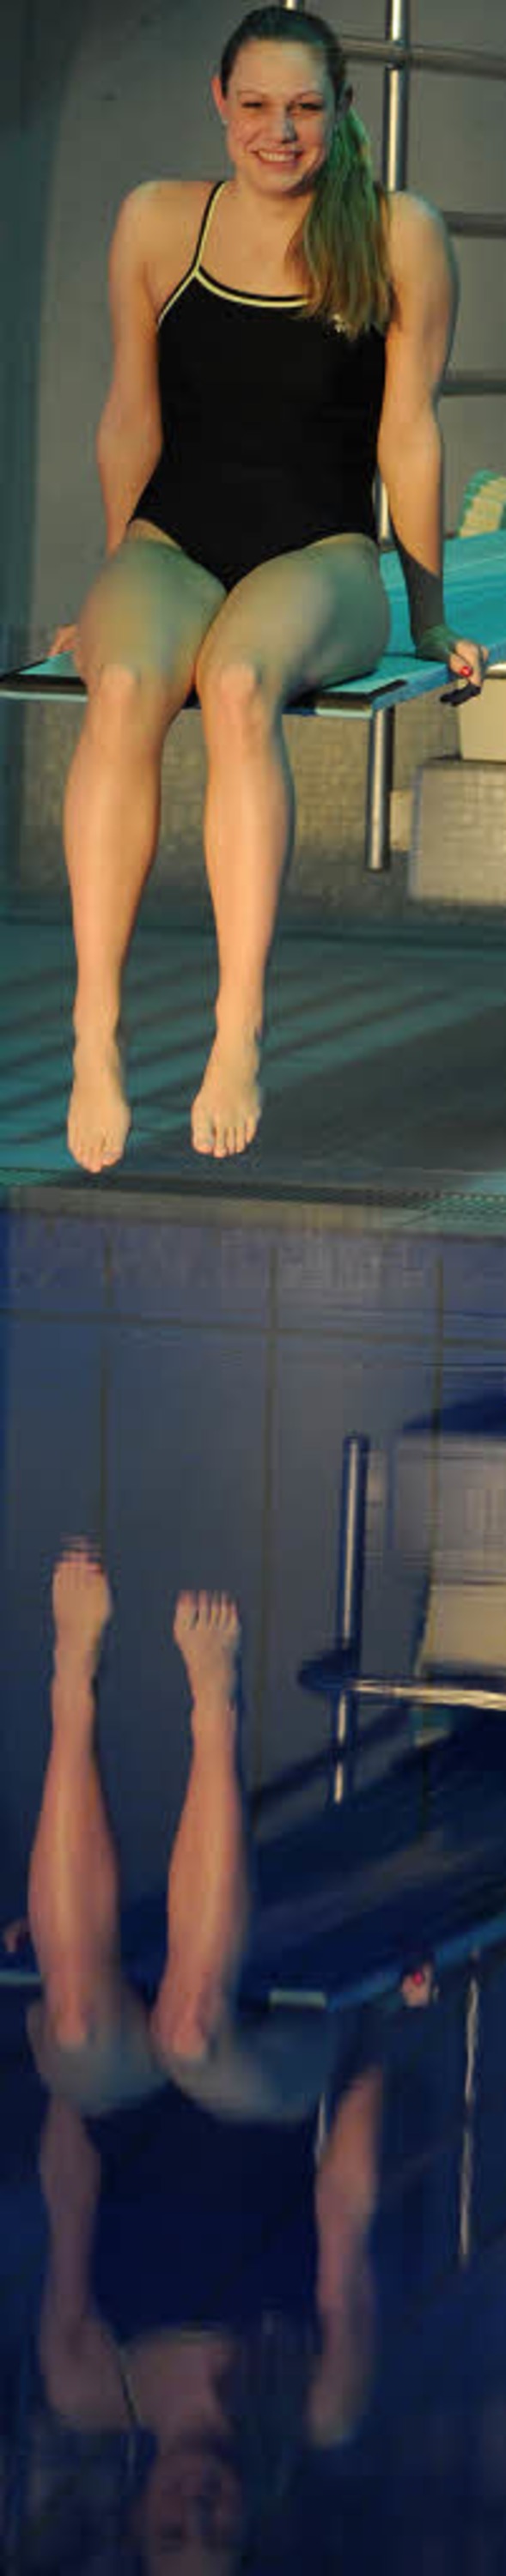 Spiegelbild einer Schwimmerin: Drte Baumert   | Foto: patrick seeger